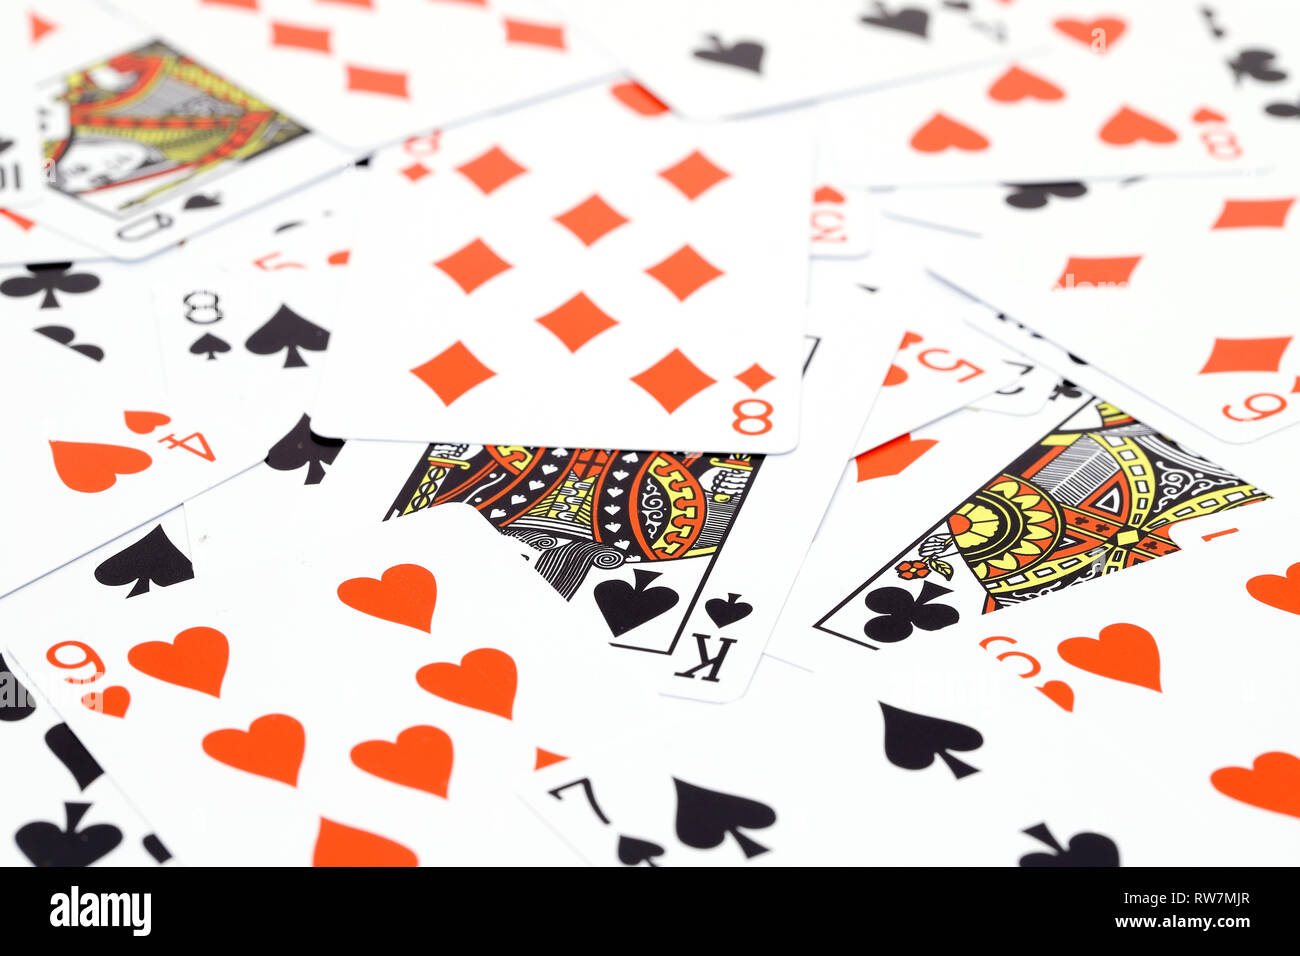 Random play casino Karten spiele Textur, Hintergrund oder wallpaper Stockfoto